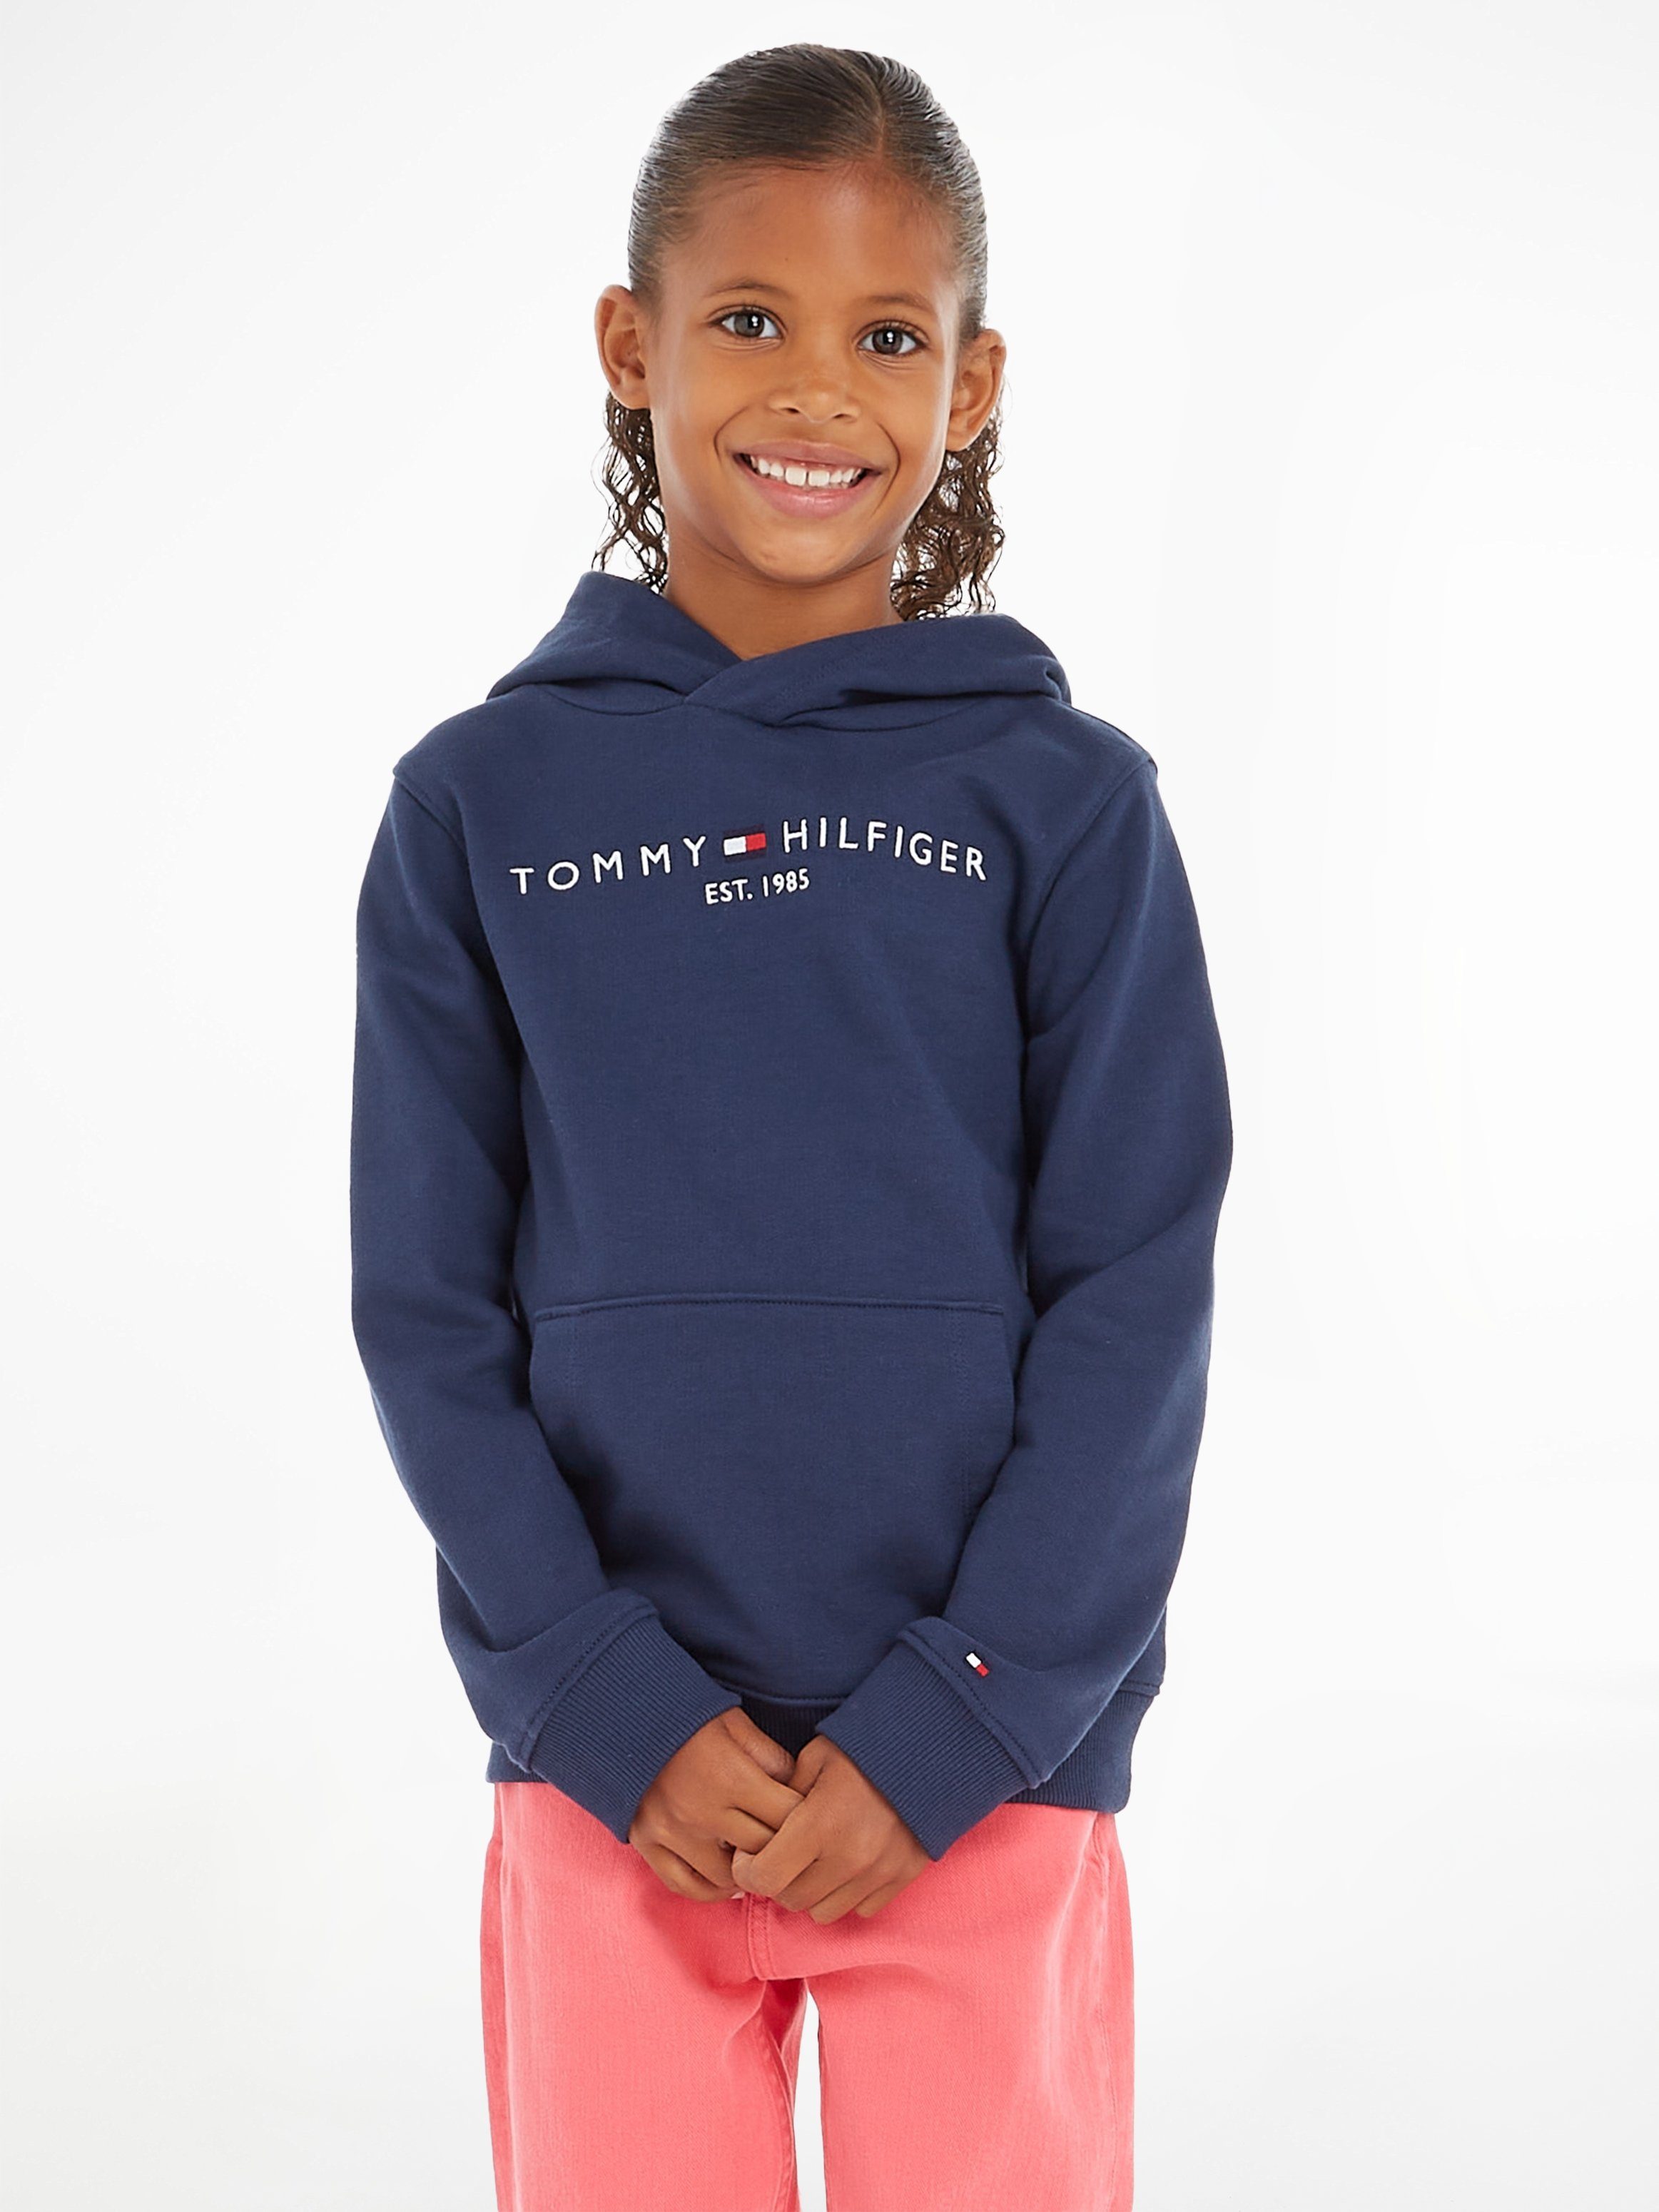 Mädchen HOODIE und Kapuzensweatshirt Hilfiger MiniMe,für Junior ESSENTIAL Jungen Kids Tommy Kinder